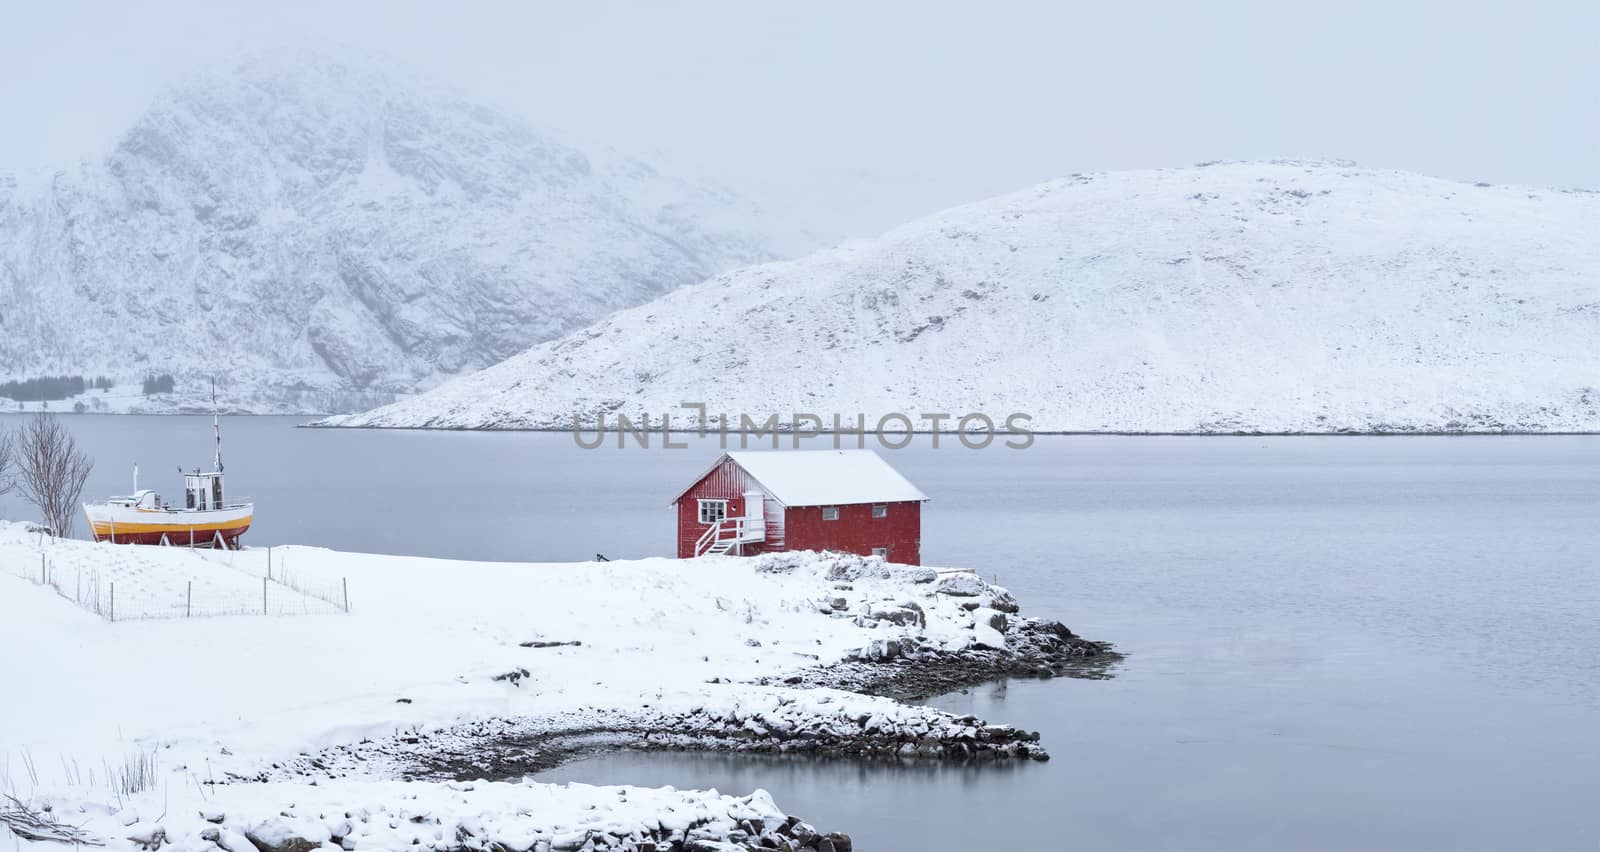 Red rorbu house in winter, Lofoten islands, Norway by dimol